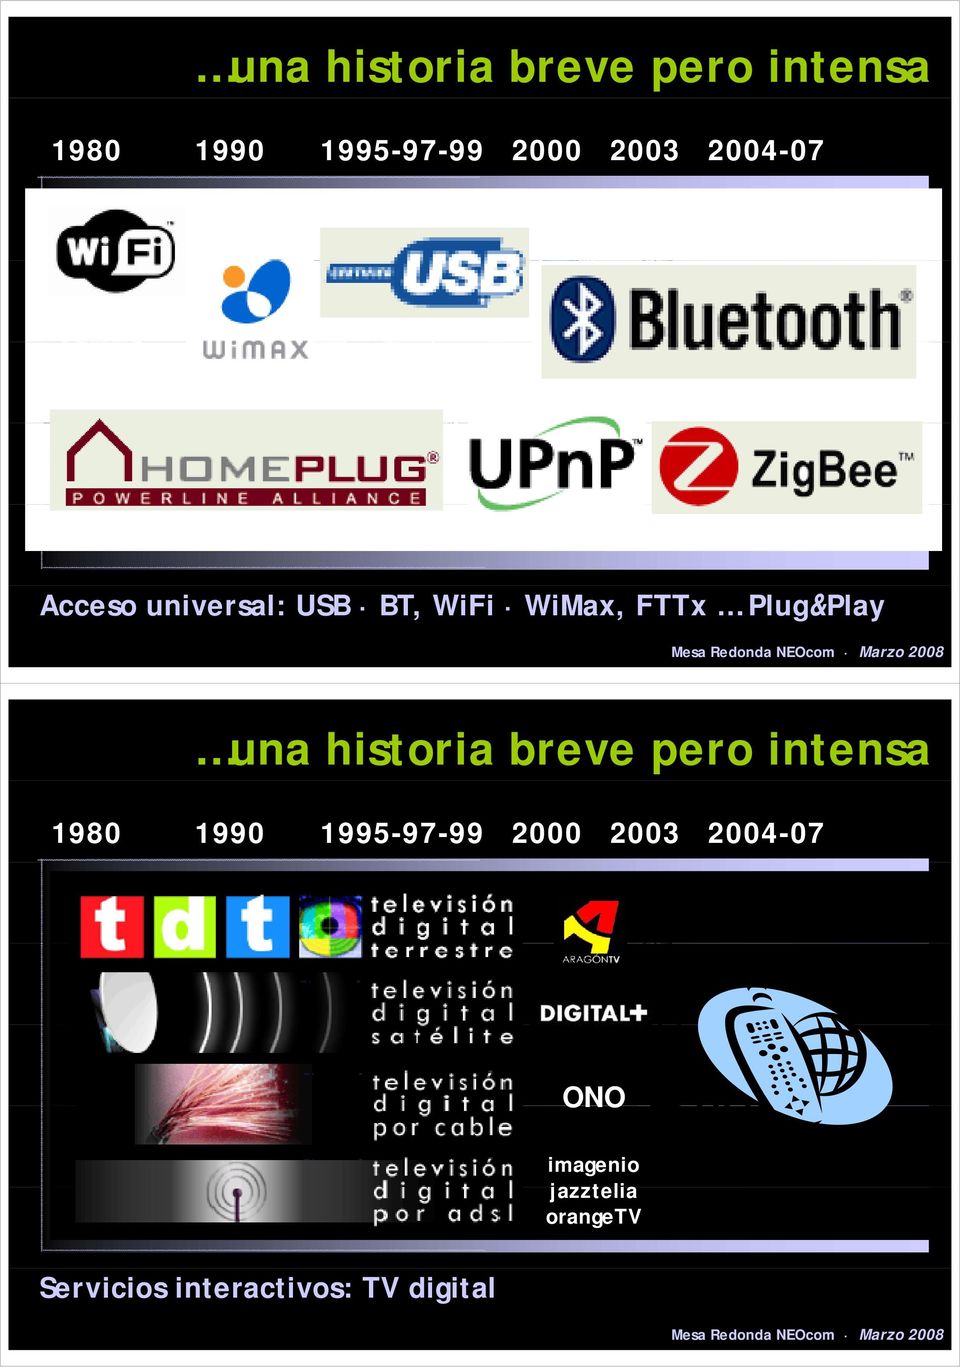 2004-07 ONO imagenio jazztelia orangetv Servicios interactivos: